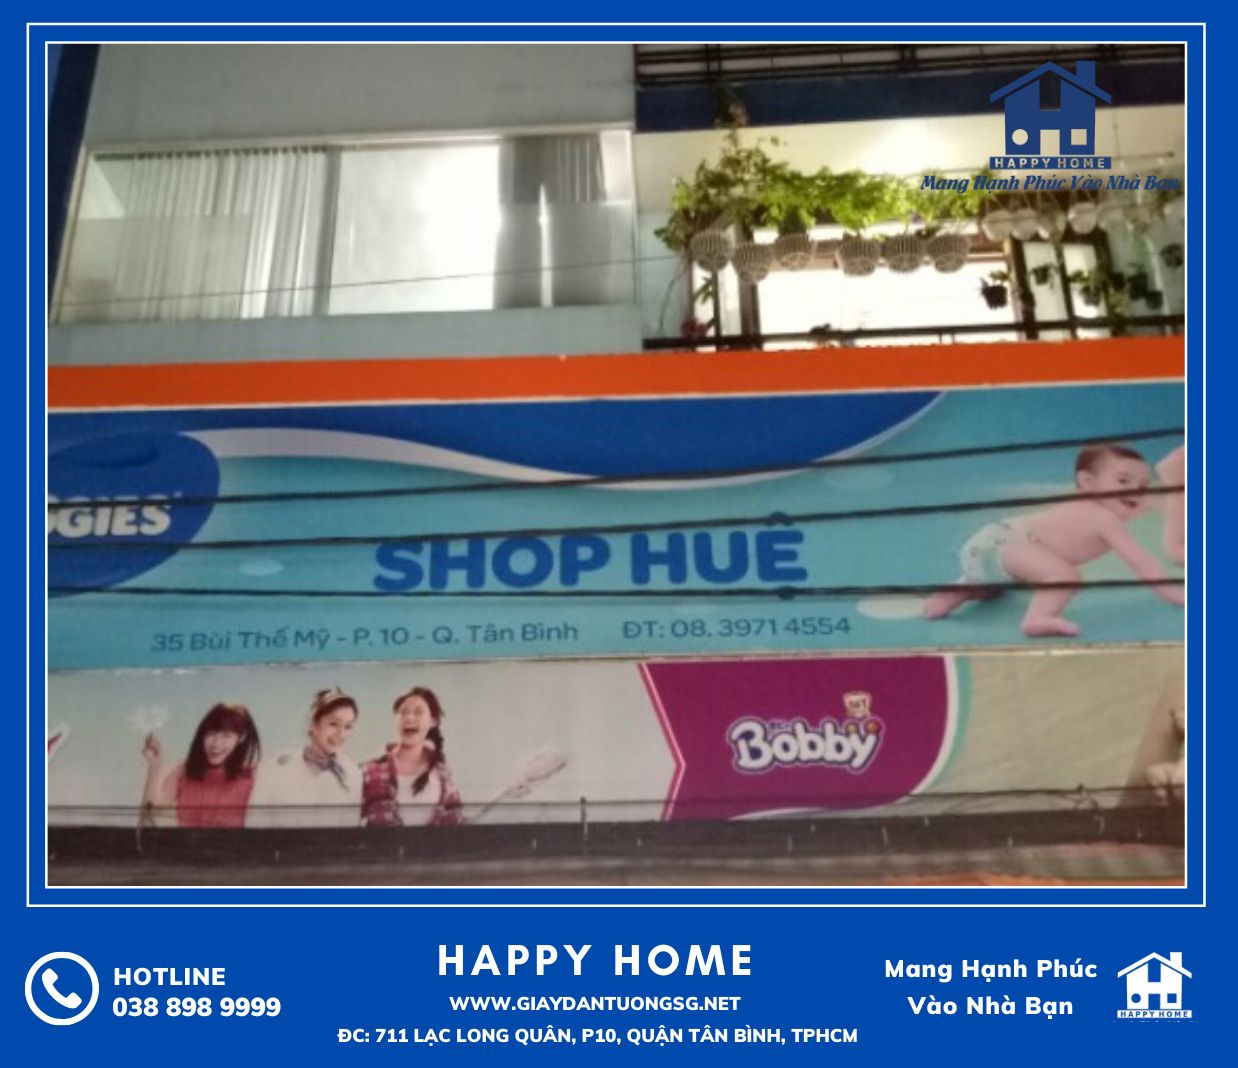 Happy Home thi công giấy dán tường 3D tại cửa hàng